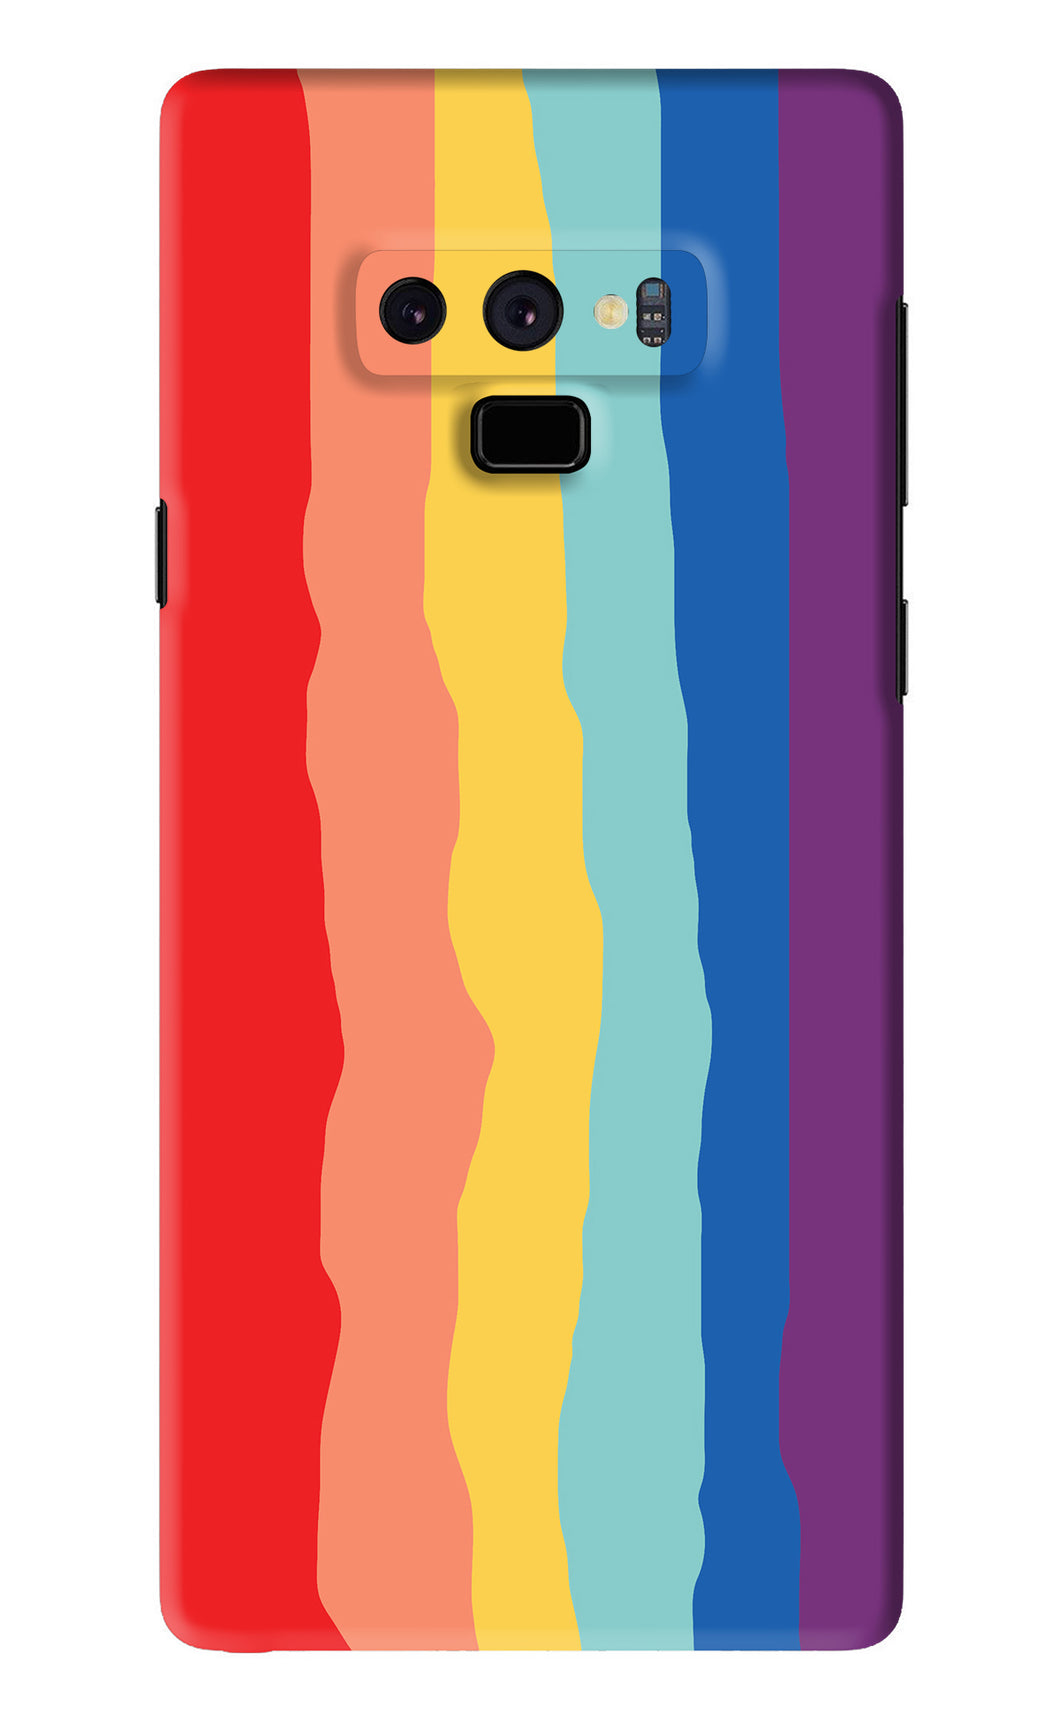 Rainbow Samsung Galaxy Note 9 Back Skin Wrap